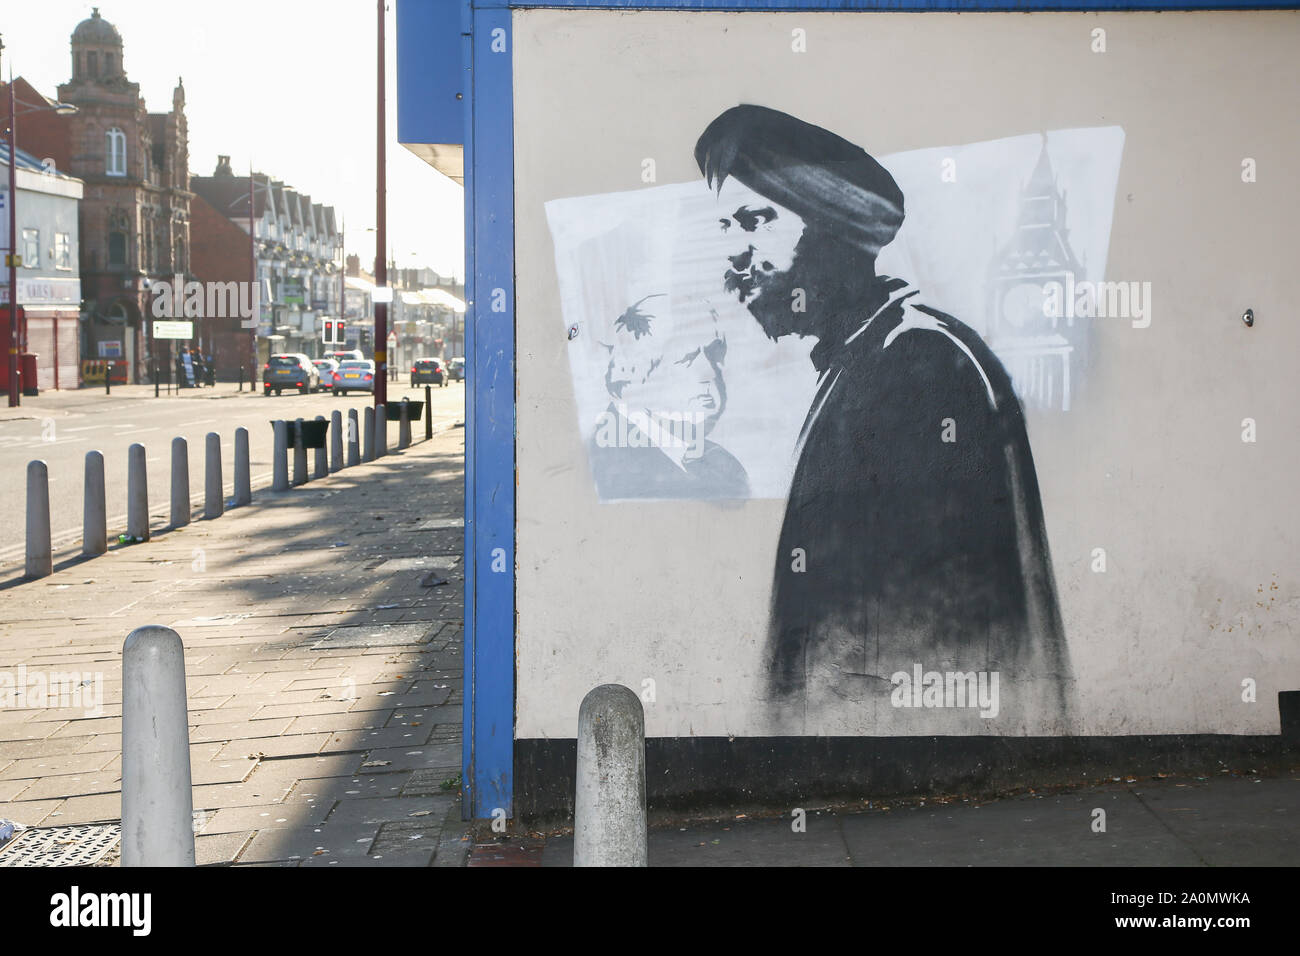 Tanmanjeet Singh Dhesi appare in una strada graffiti murale, Soho Road, Handsworth, Birmingham, Regno Unito. Il dipinto raffigura l alterco Tan Dhesi aveva con PM Boris Johnson Sett 2019 in House of Commons Foto Stock